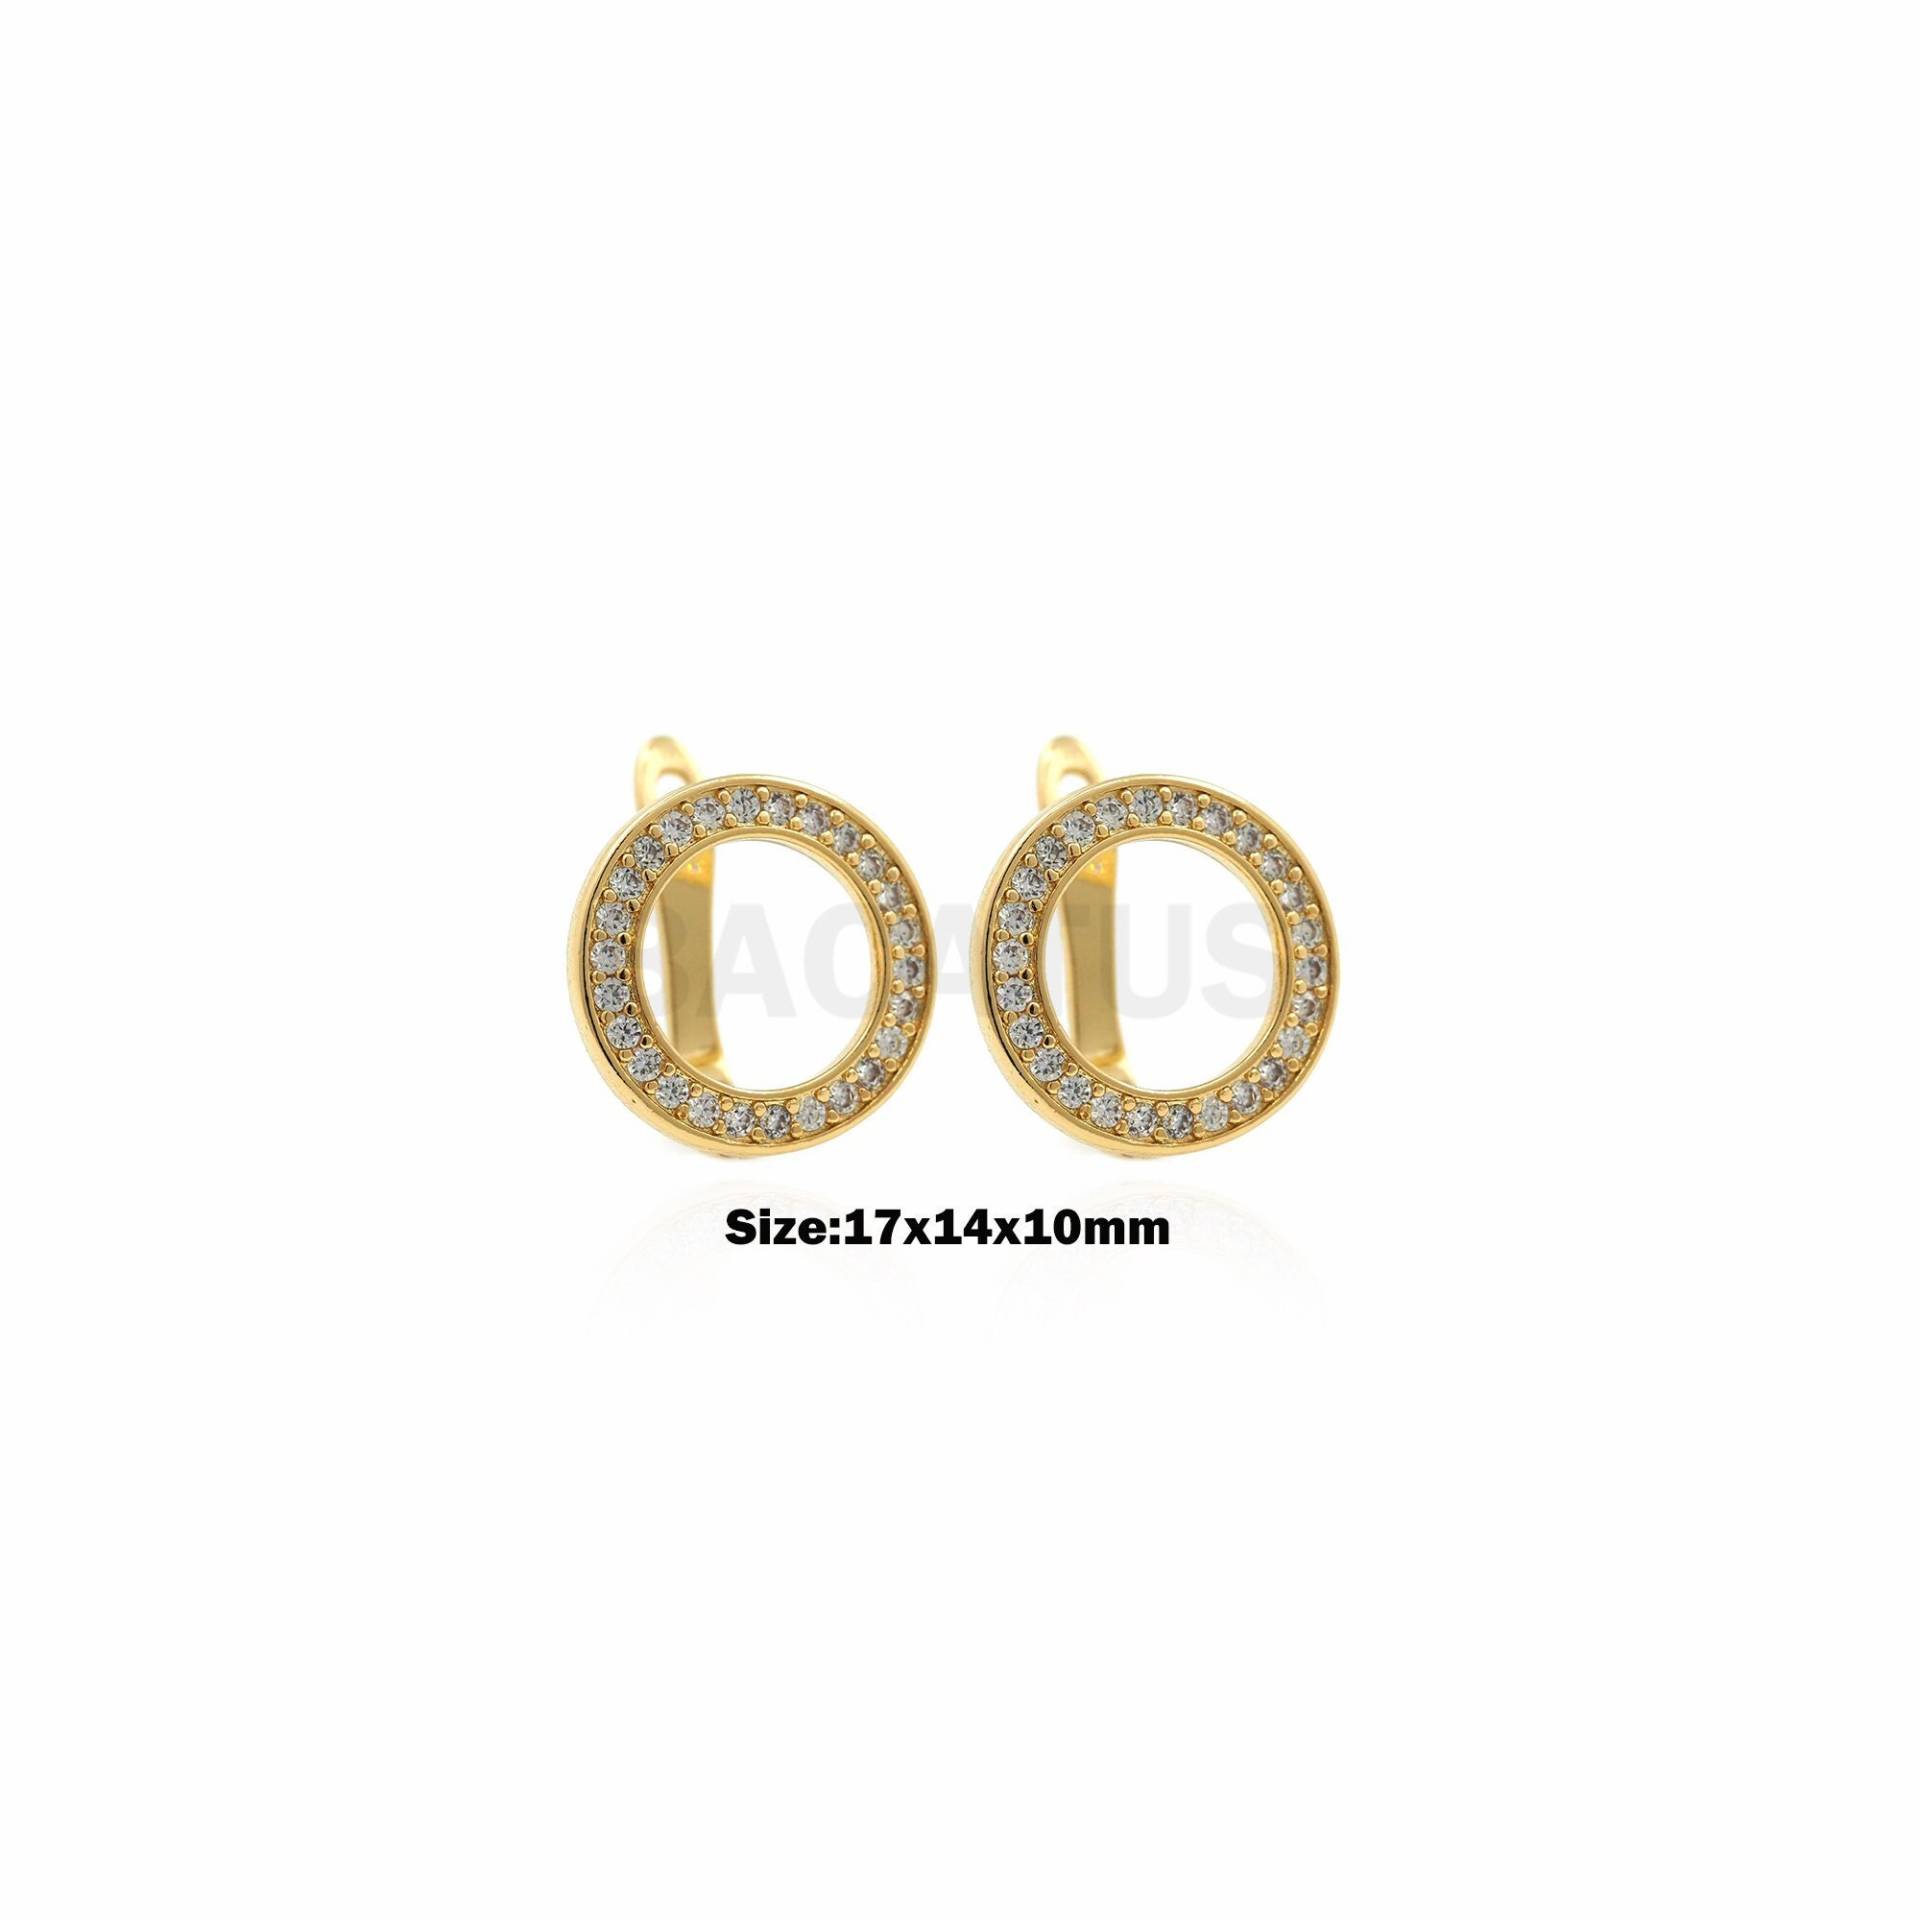 1Pair Gold Filled Runde Hohl Ohrringe Zirkonia Kreis Schmuck Perforierte Damen Modeschmuck 17x14x10mm von BACATUSCR